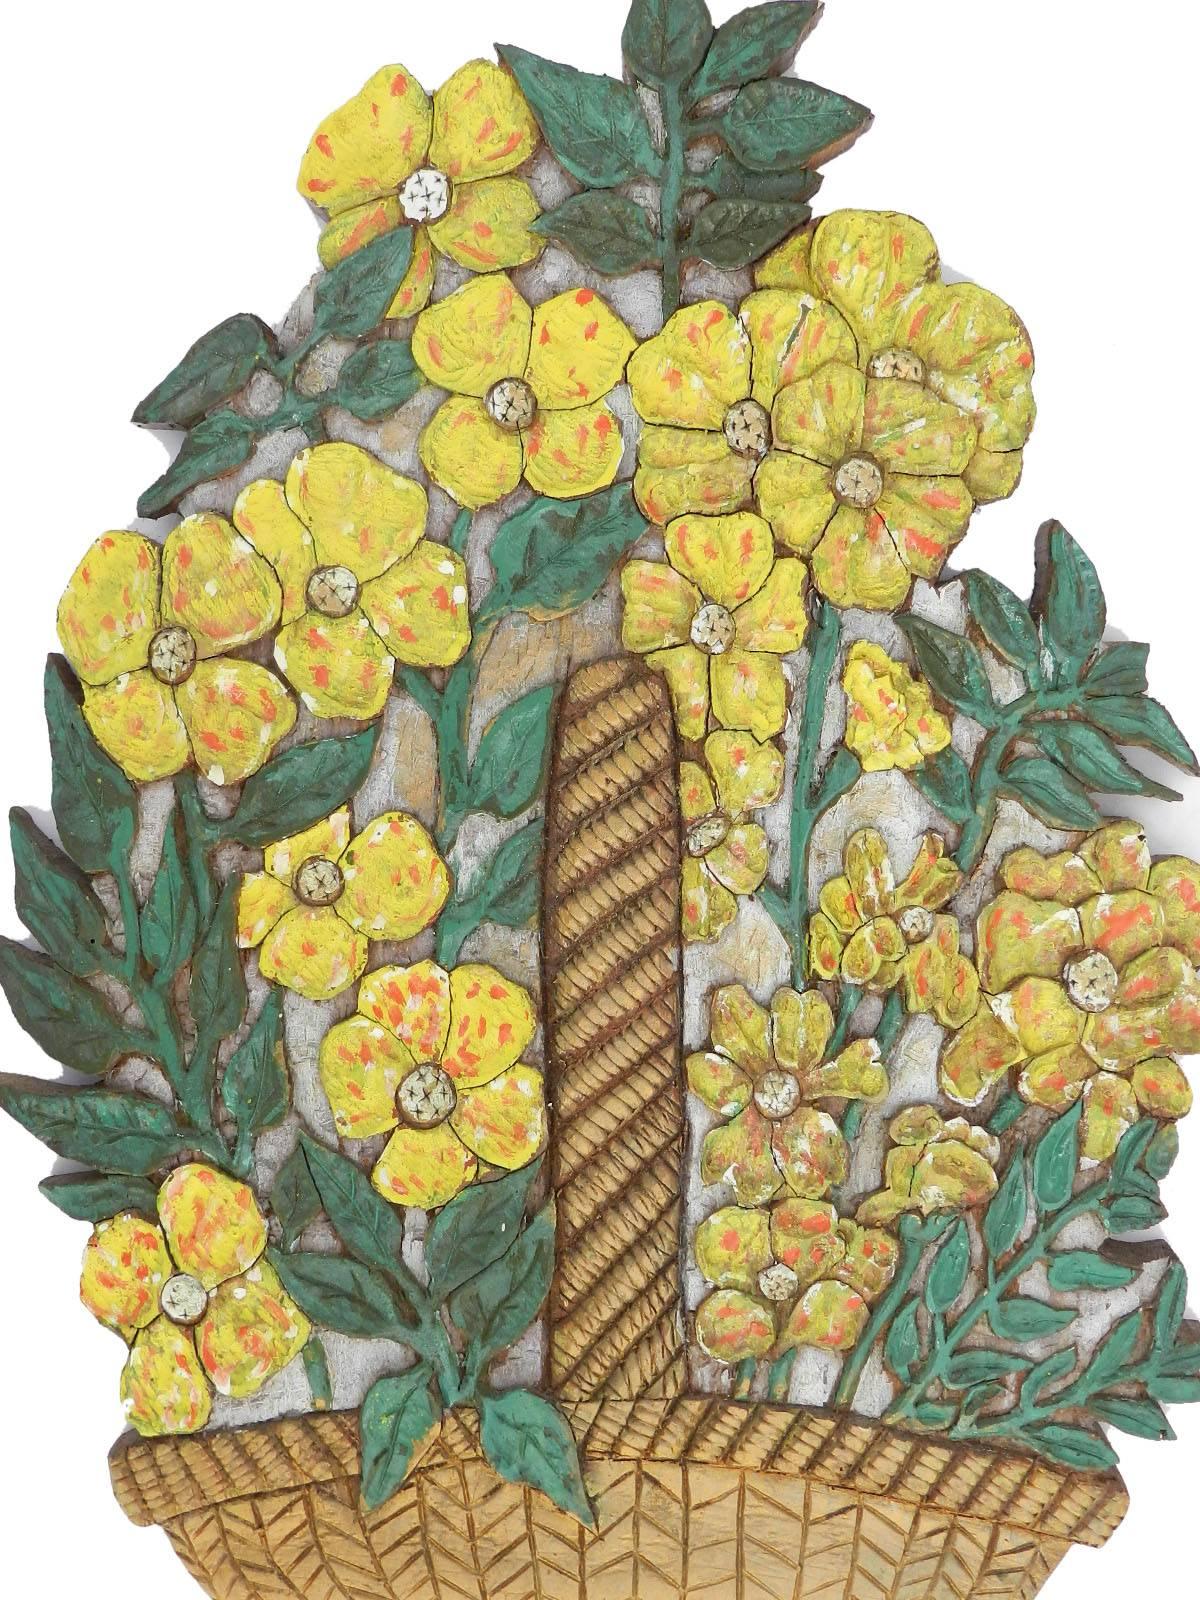 Plaque murale sculpturale fleurs panier floral sculpté et peint à la main, vers 1930.
Sculpture murale décorative inhabituelle
Magnifique peinture de l'époque Art déco
Naïve et charmante
Ancien 